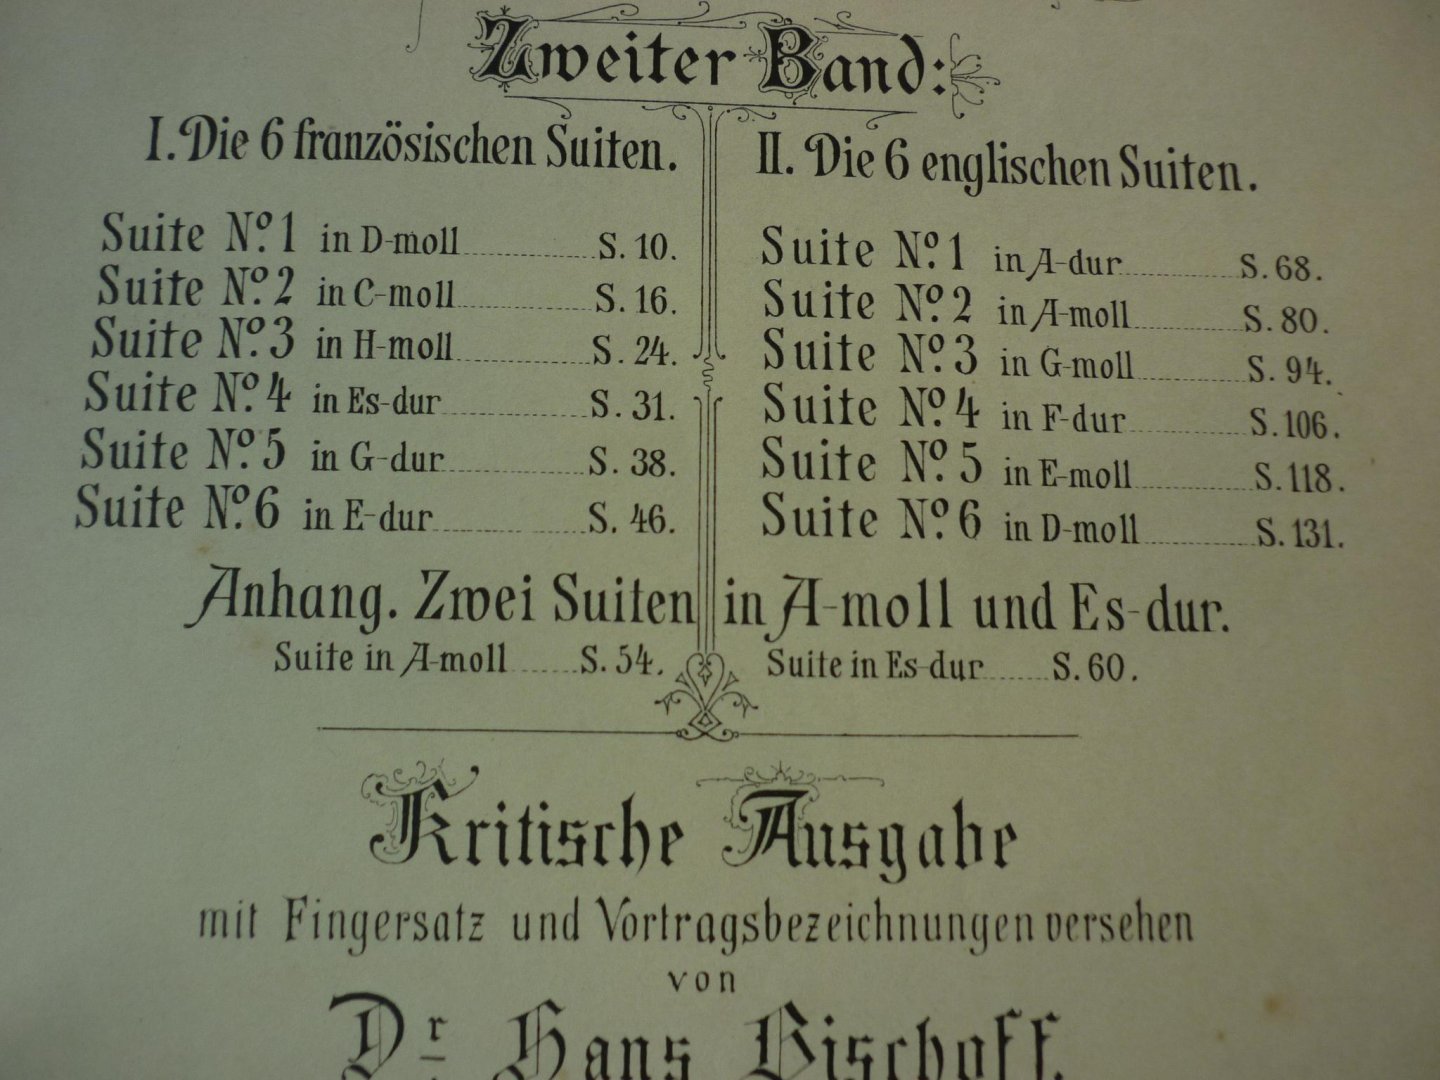 Bach; J. S. (1685-1750) - Klavierwerke; Band 2; Krititsche Ausgabe mit Fingersatz und Vortragsbezeichnungen versehen von Dr. Hans Bischoff (Berlin, Mai 1881) voor Piano - Originele unieke uitgave!